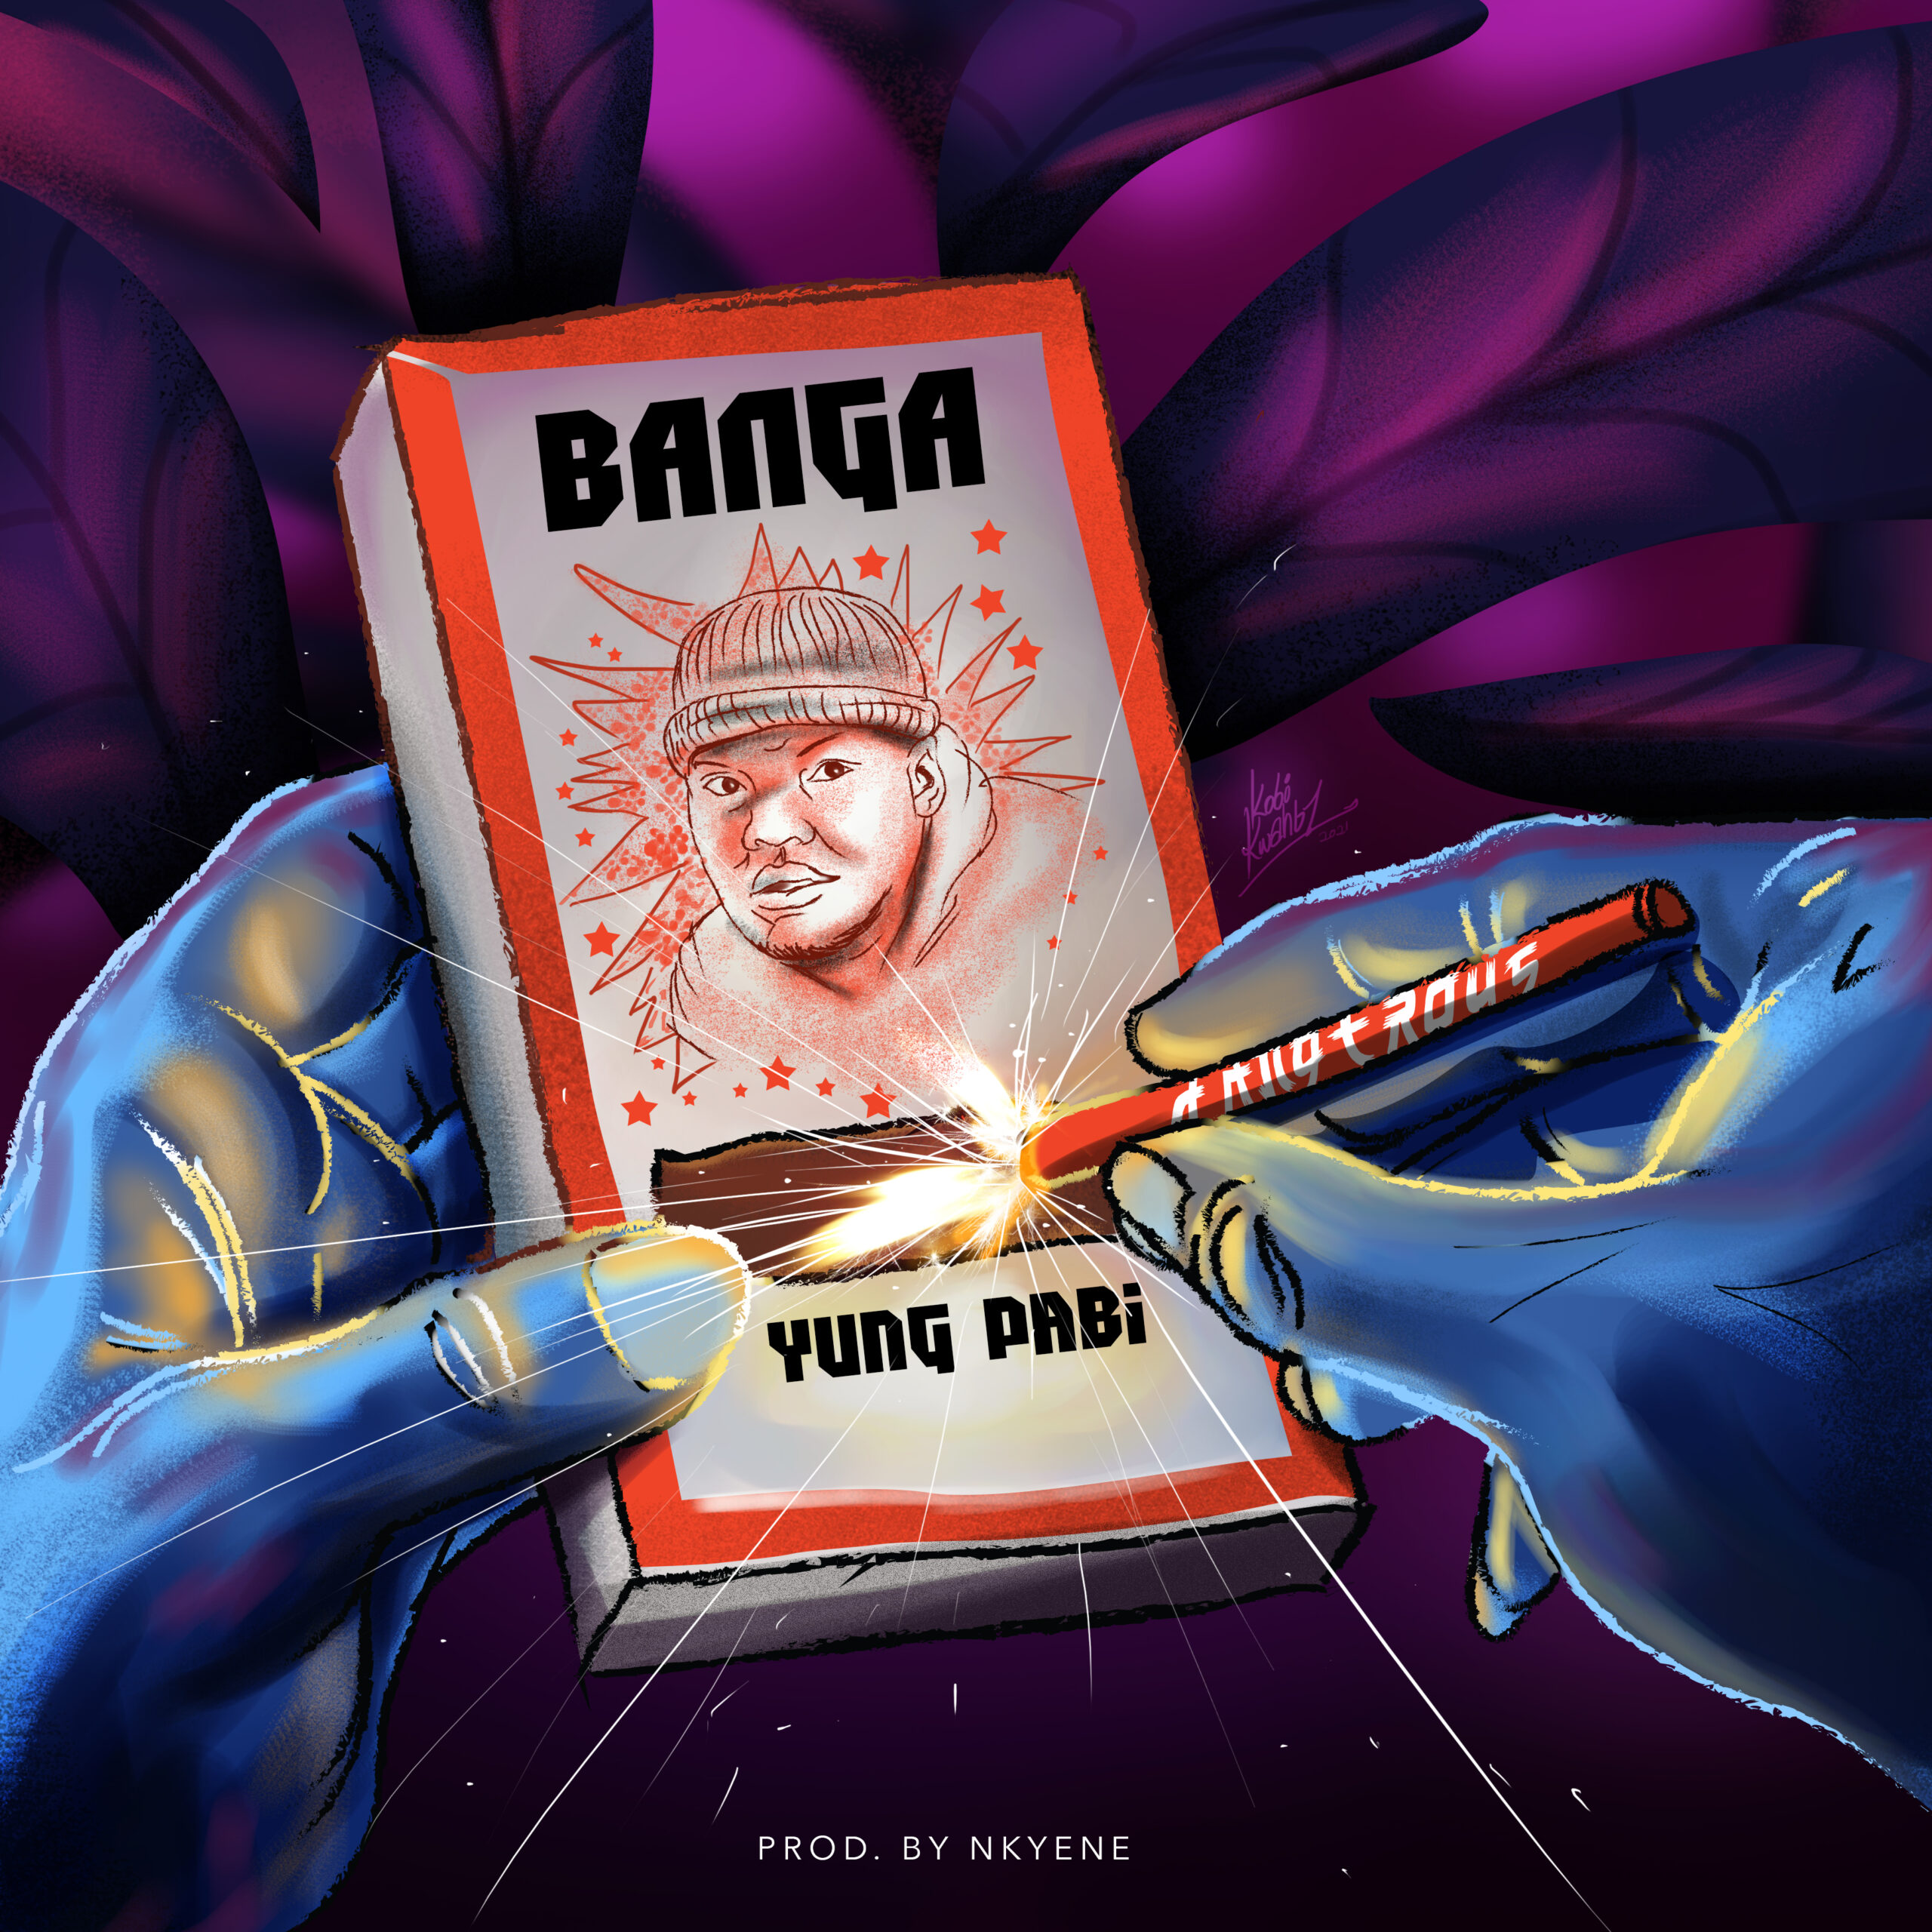 Yung Pabi’s back with a Banga!